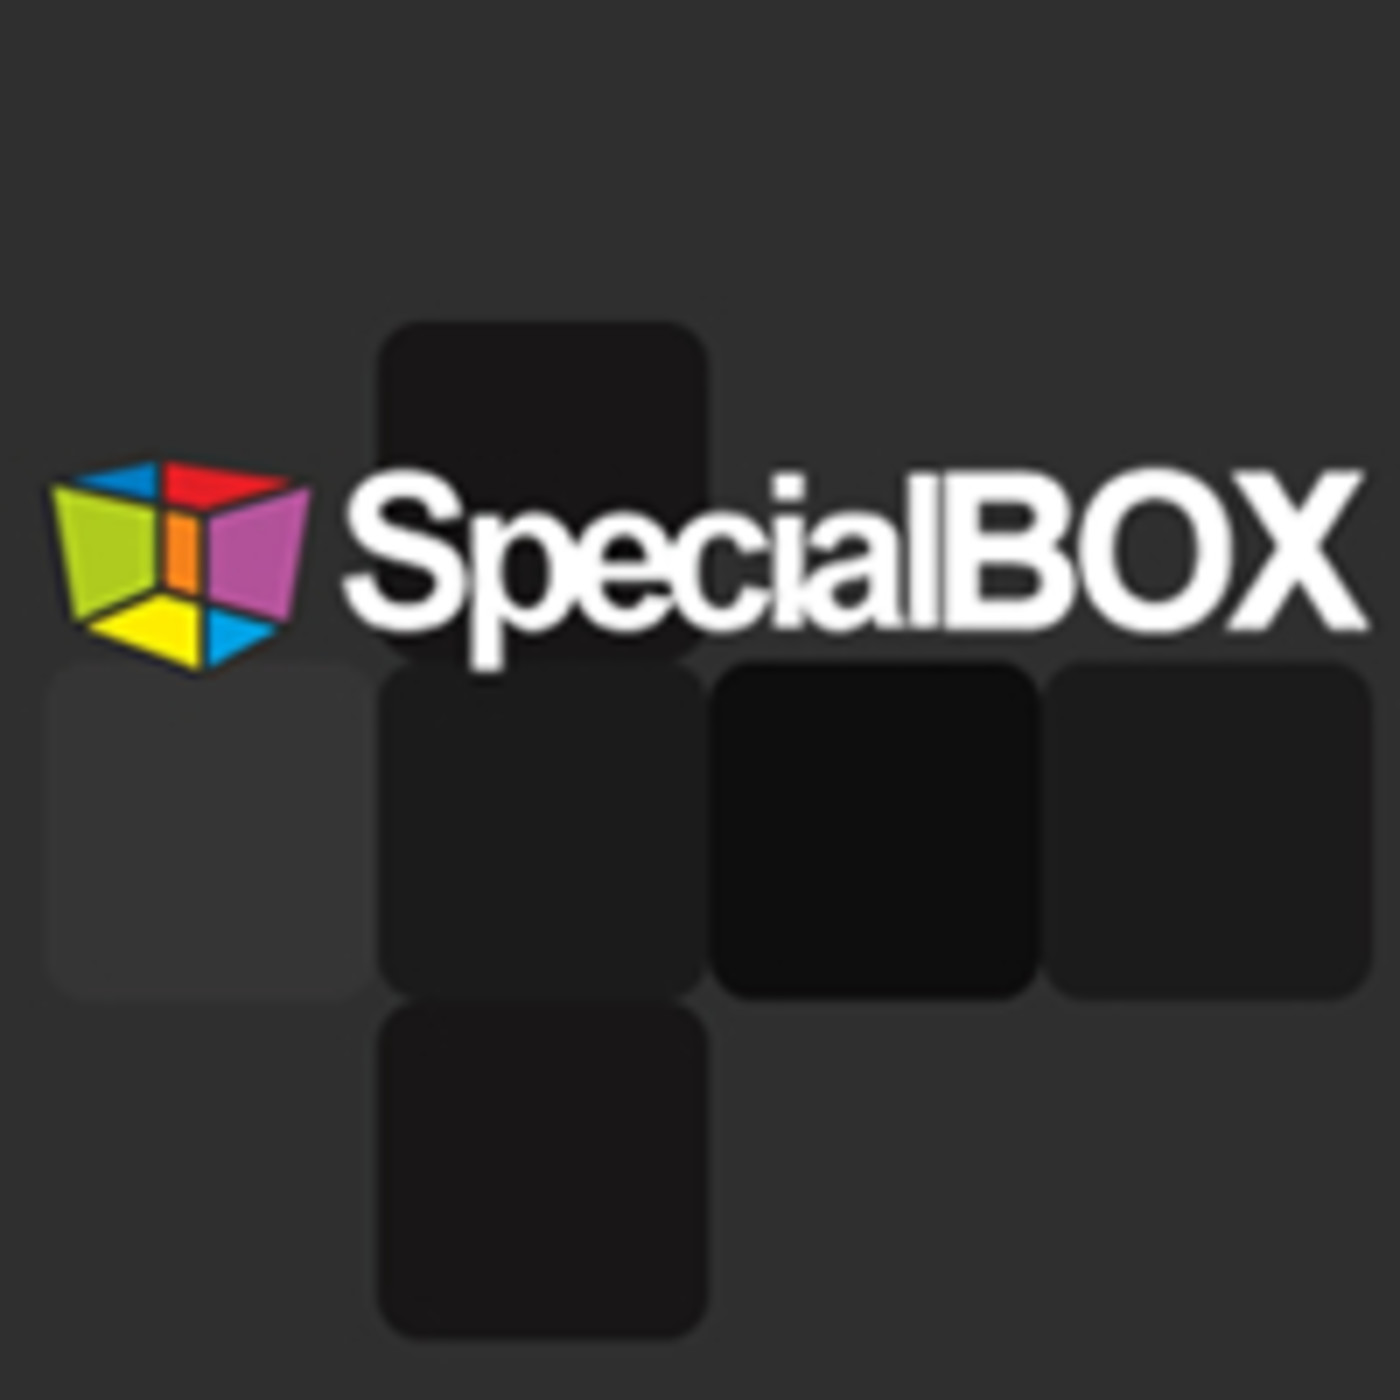 Special box hace 20 años 2 parte